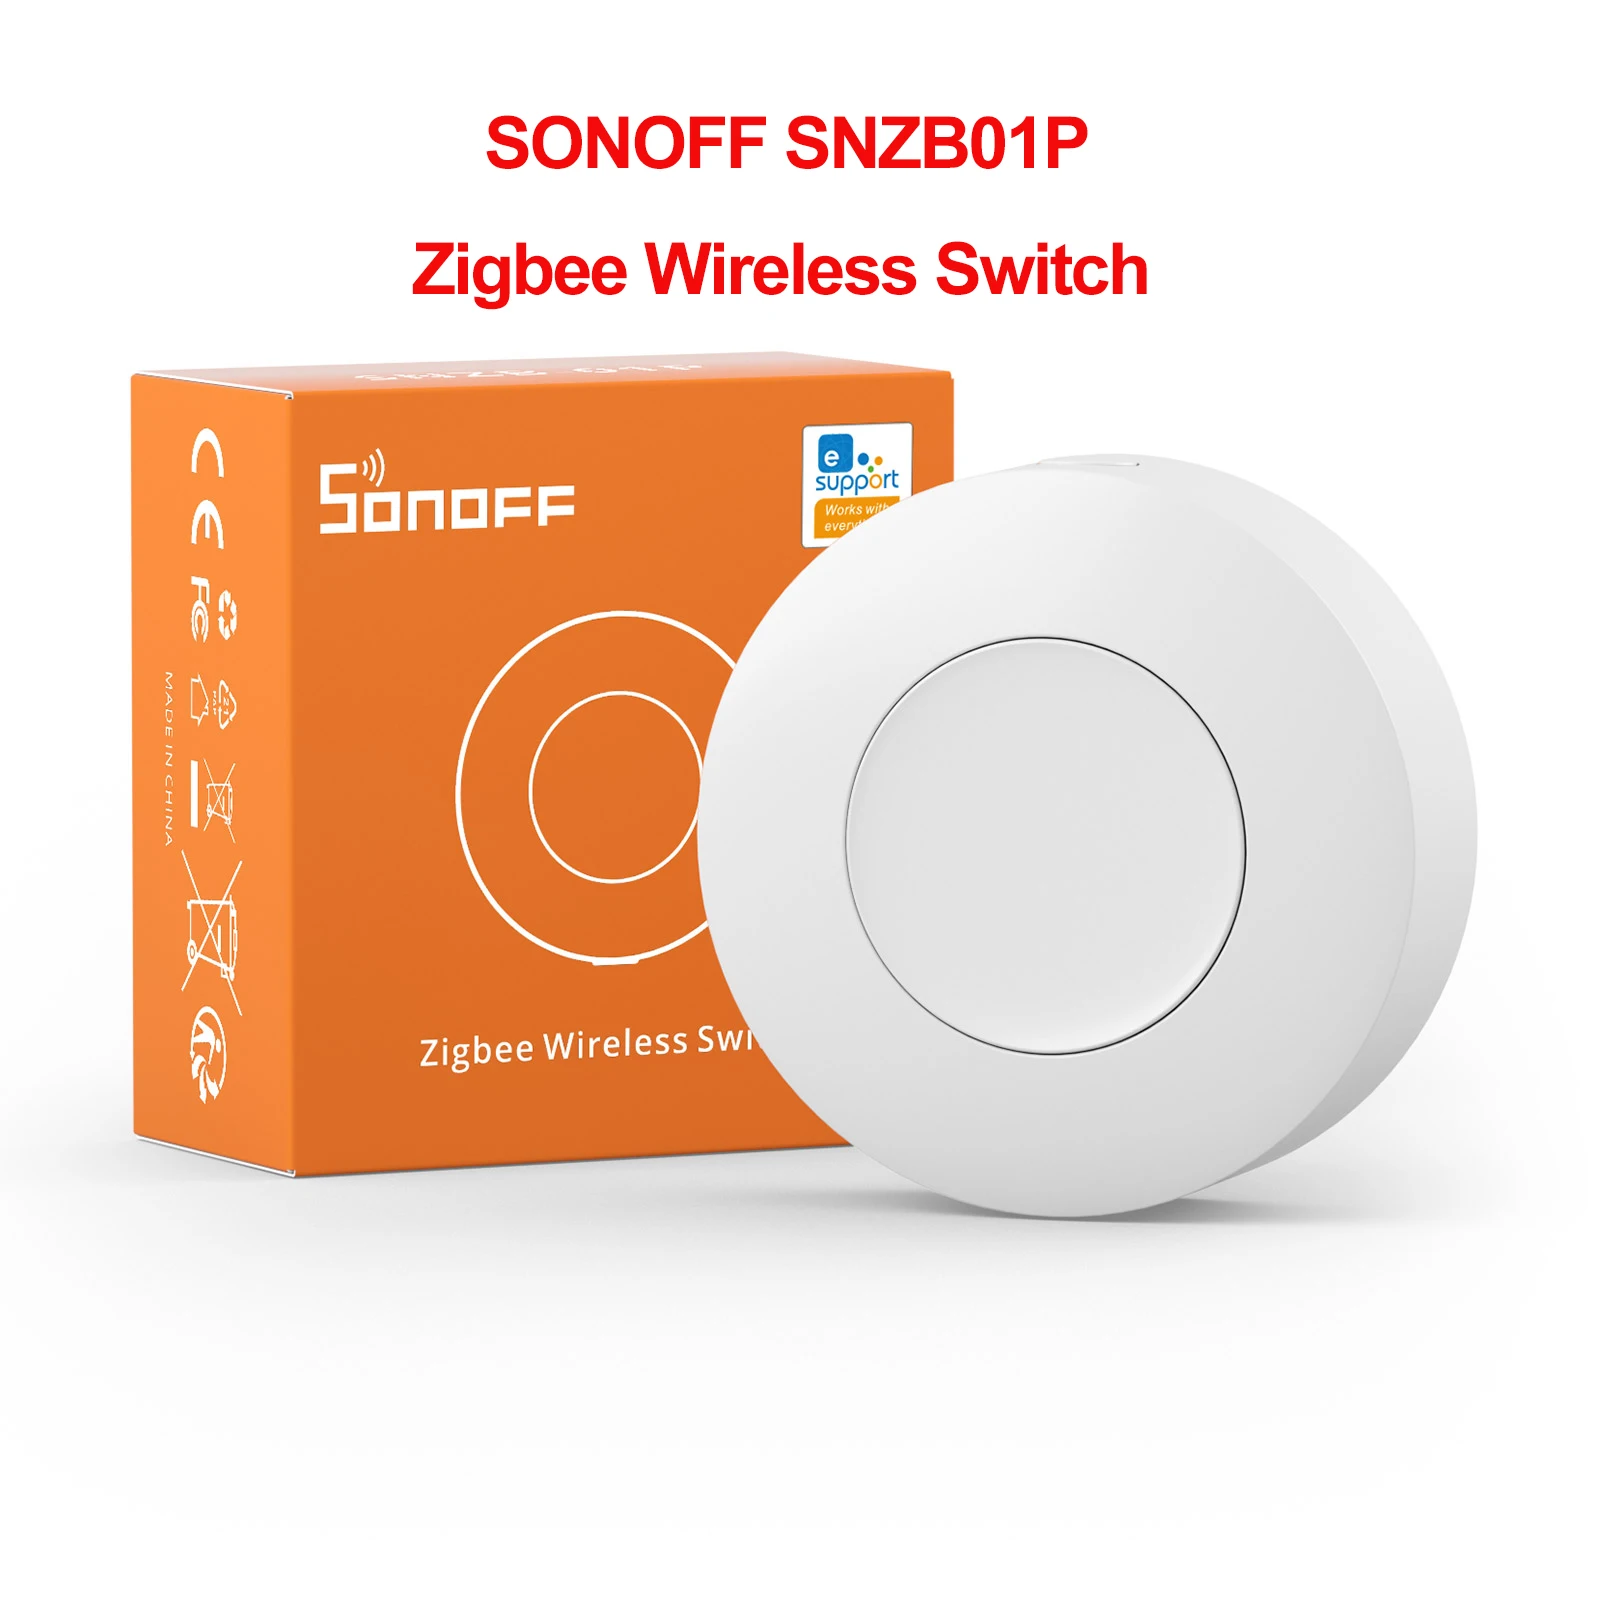  SONOFF Zigbee 3.0 USB Dongle Plus-E Gateway, Universal Zigbee  USB Gateway with Antenna for Home Assistant, Open HAB, Zigbee2MQTT etc,  Wireless Zigbee 3.0 USB Adapter : Electronics